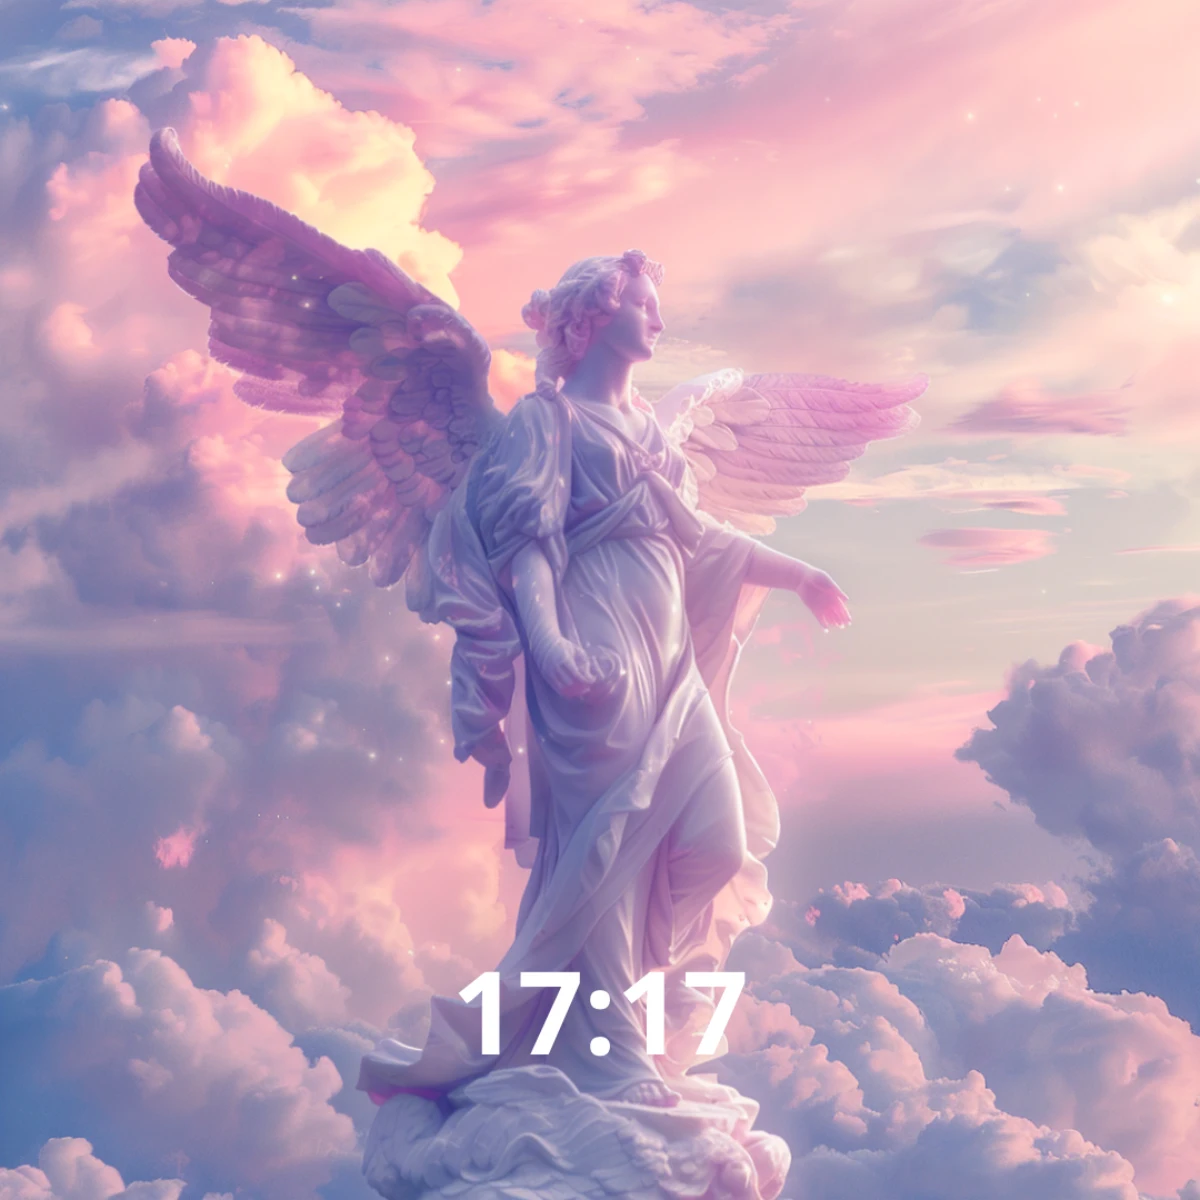 heure miroir 17 17 ange dans un ciel